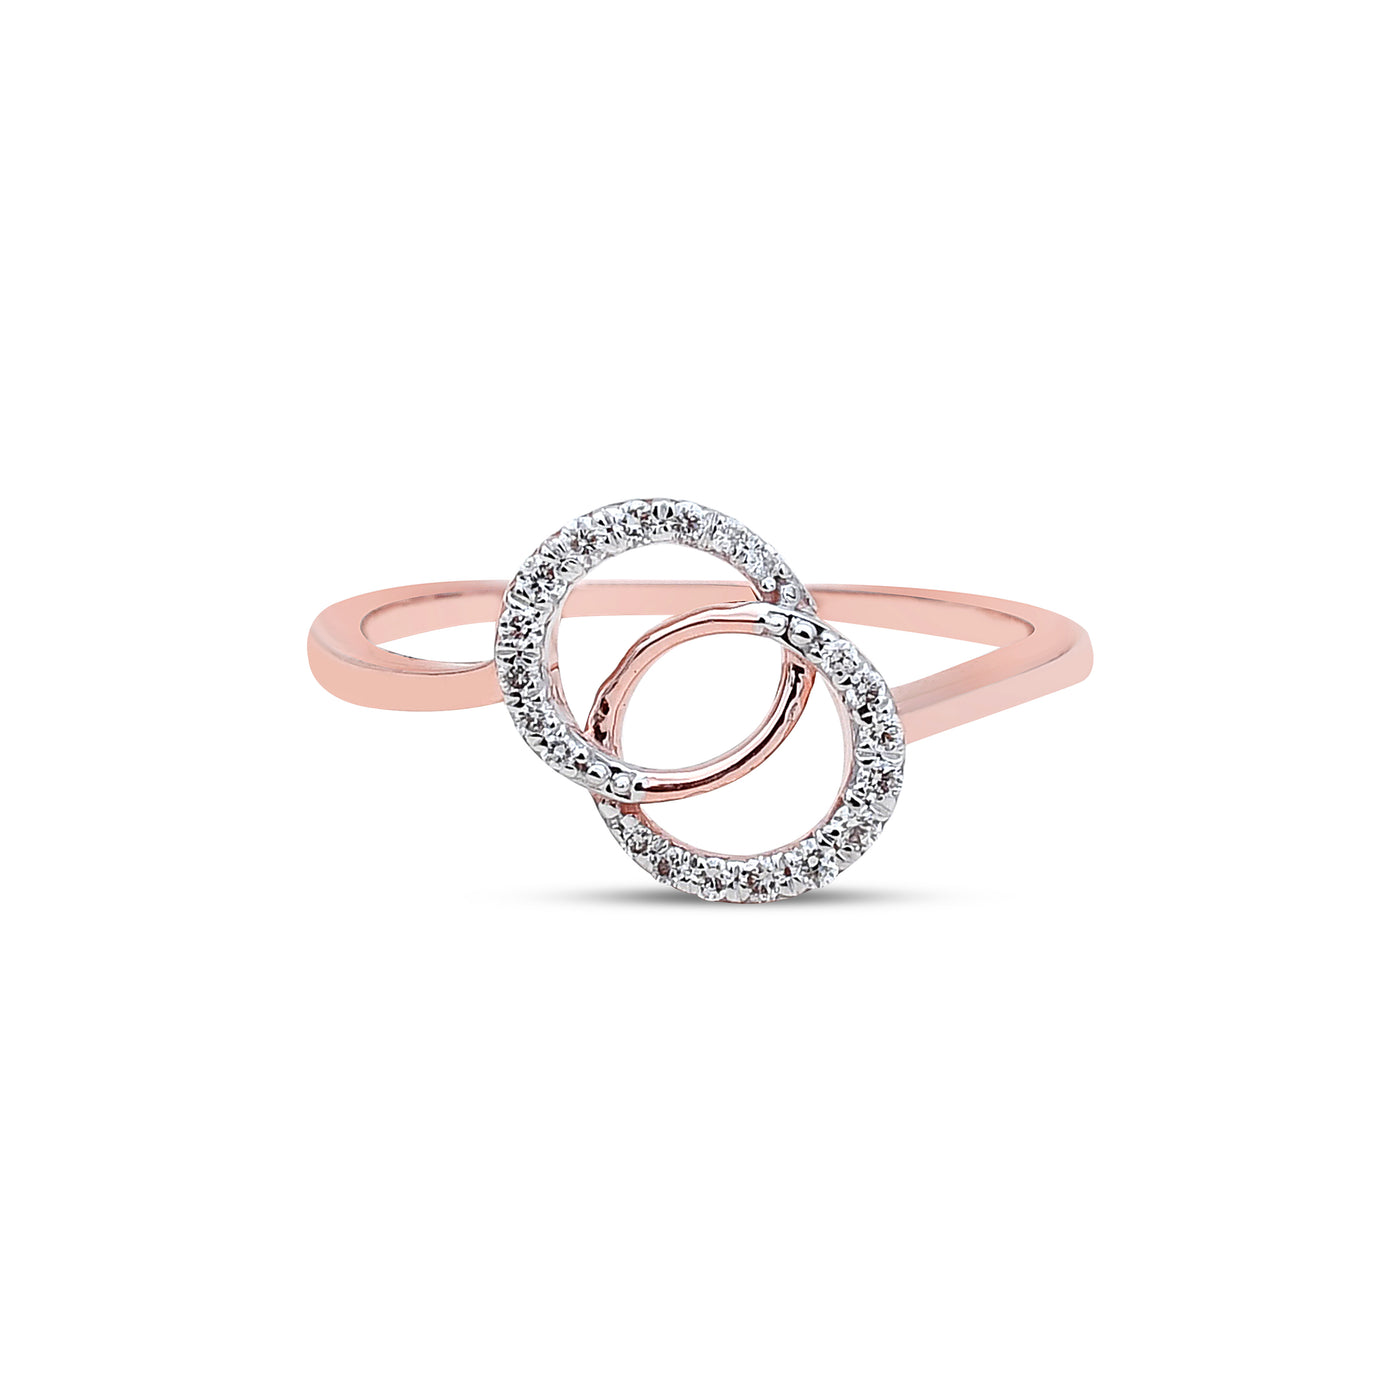 The Ezra Diamond Ring